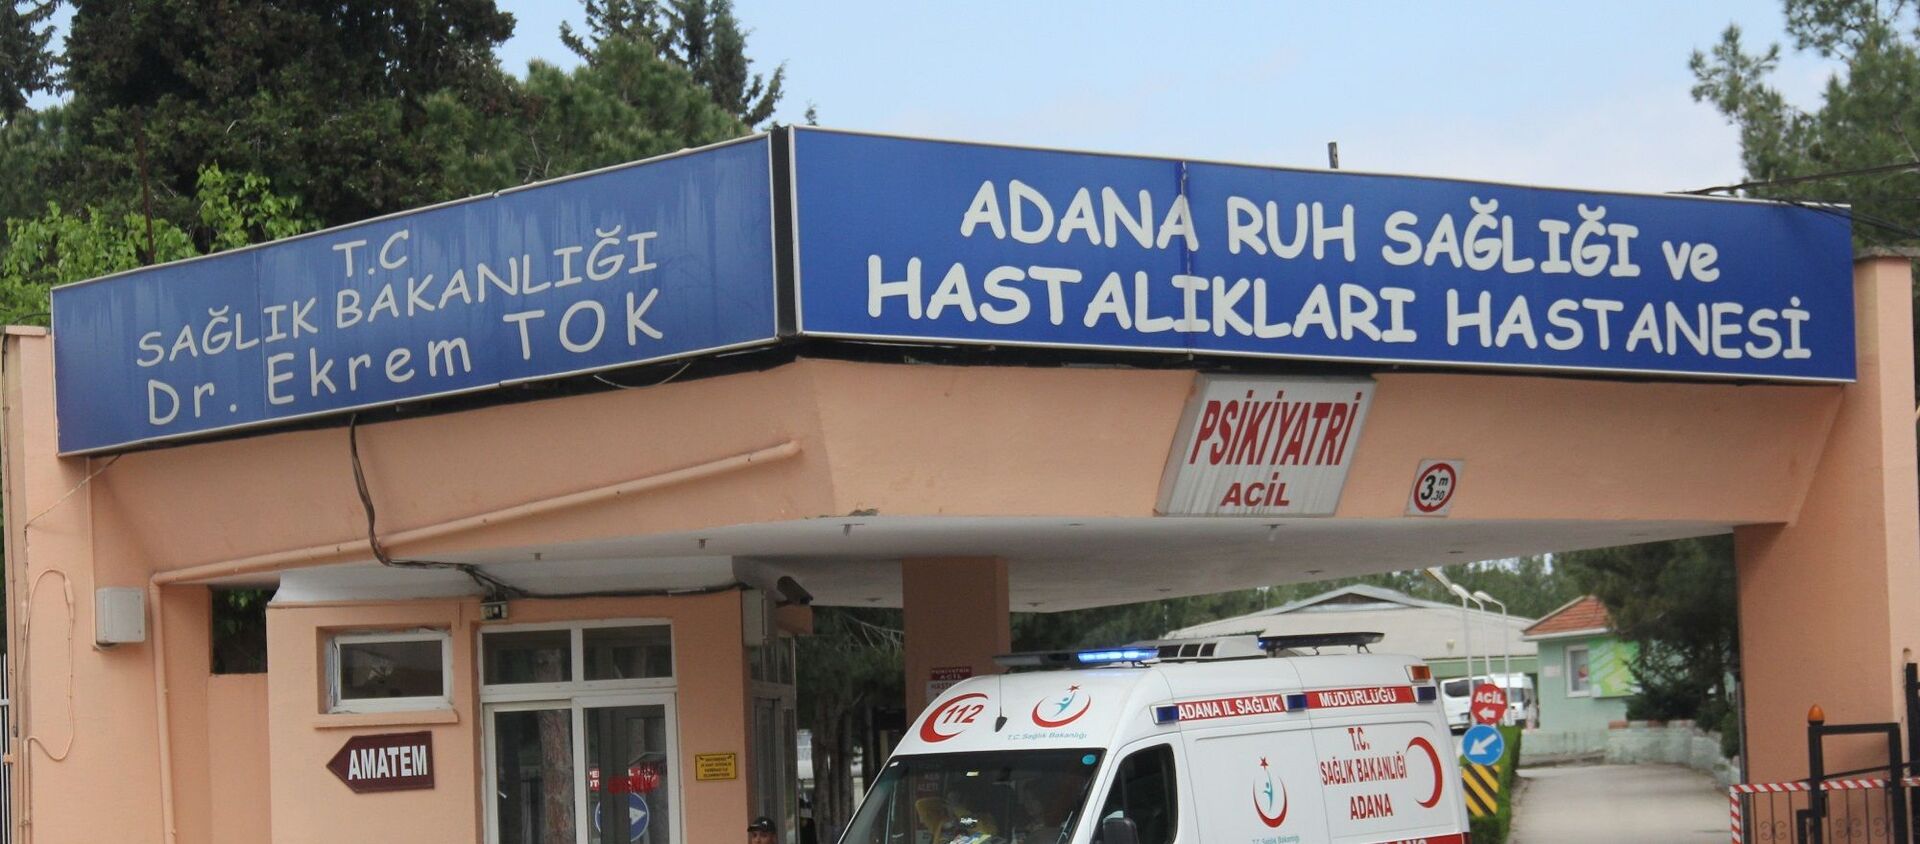 Adana'da şizofreni hastası bir kadın, hastanede kendisine küfrettiğini ileri sürdüğü kadının gözlerini çıkardı.  - Sputnik Türkiye, 1920, 06.03.2020